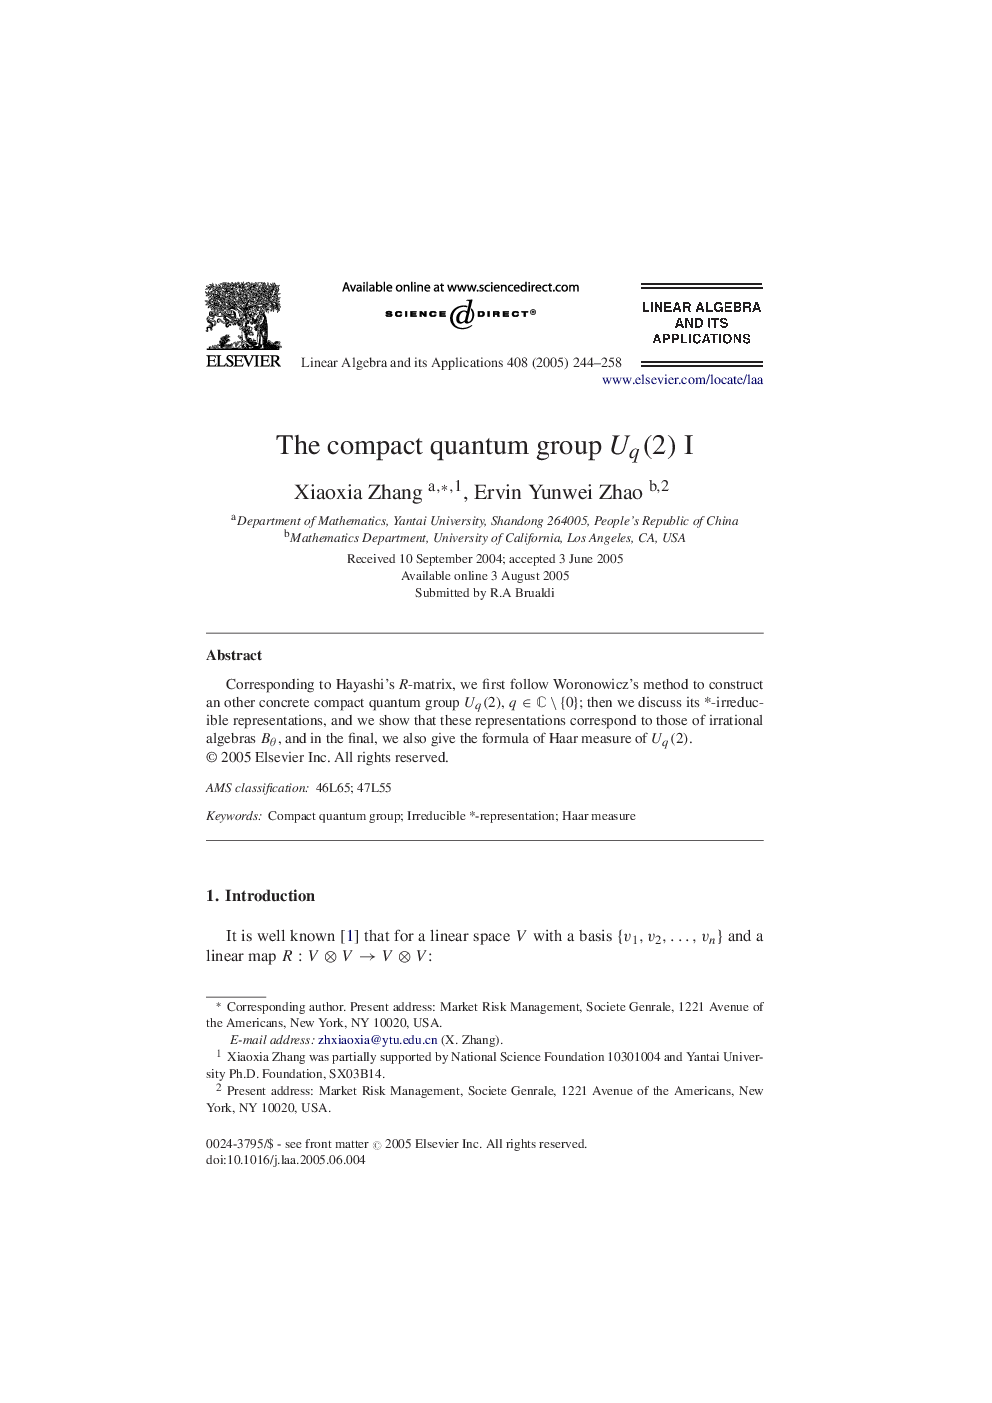 The compact quantum group Uq(2) I